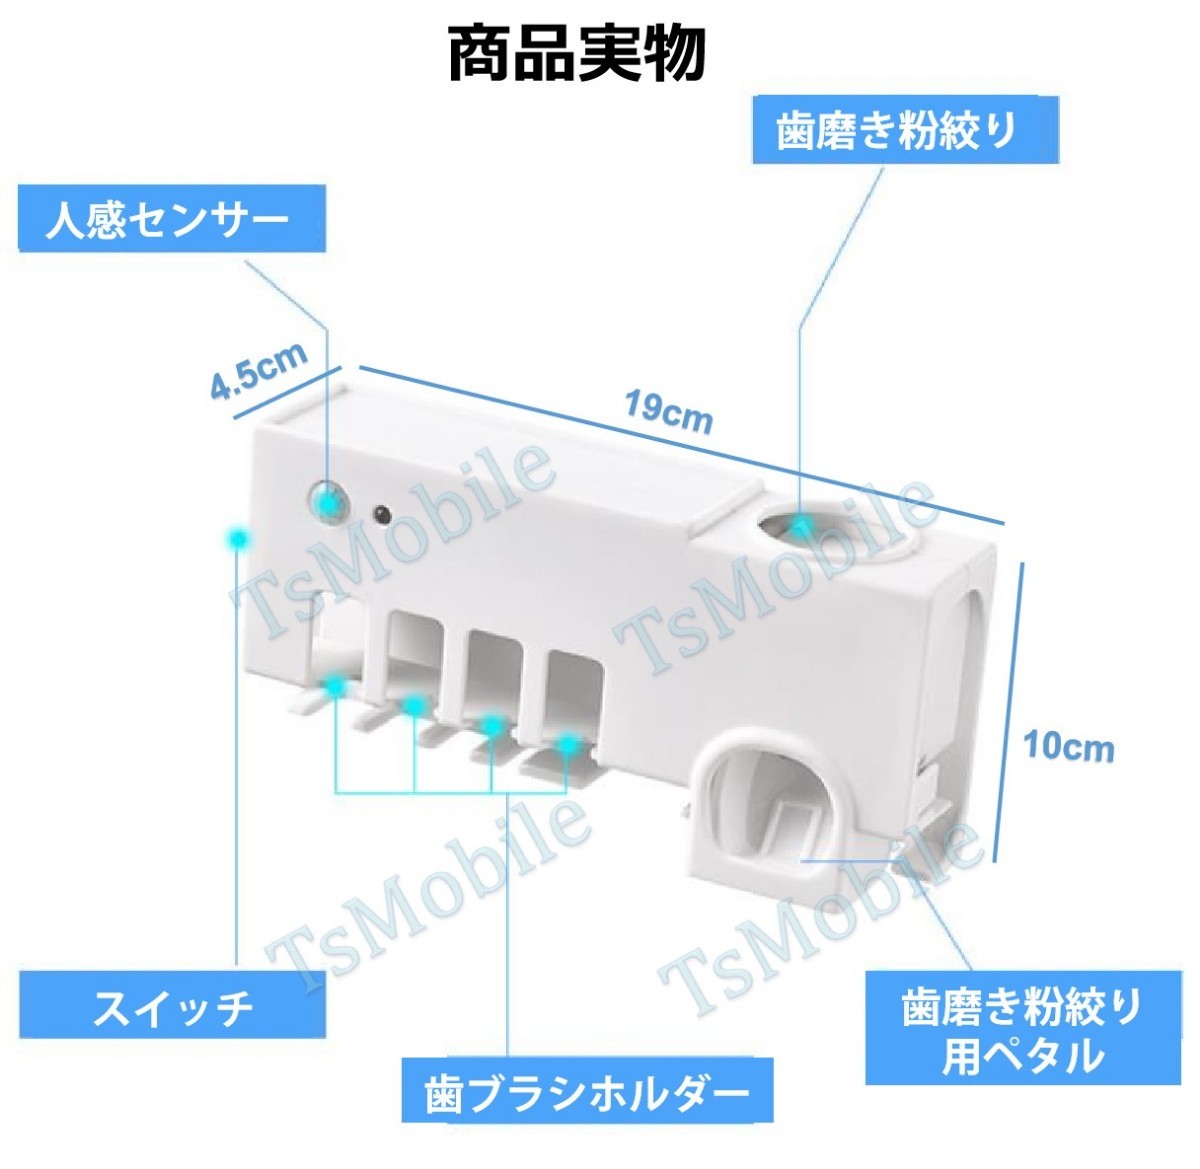 歯ブラシ立て  人感センサー 自動ONOFF 歯ブラシホルダー UVライト USB充電 壁掛け 収納ラック 4本対応 歯ブラシ